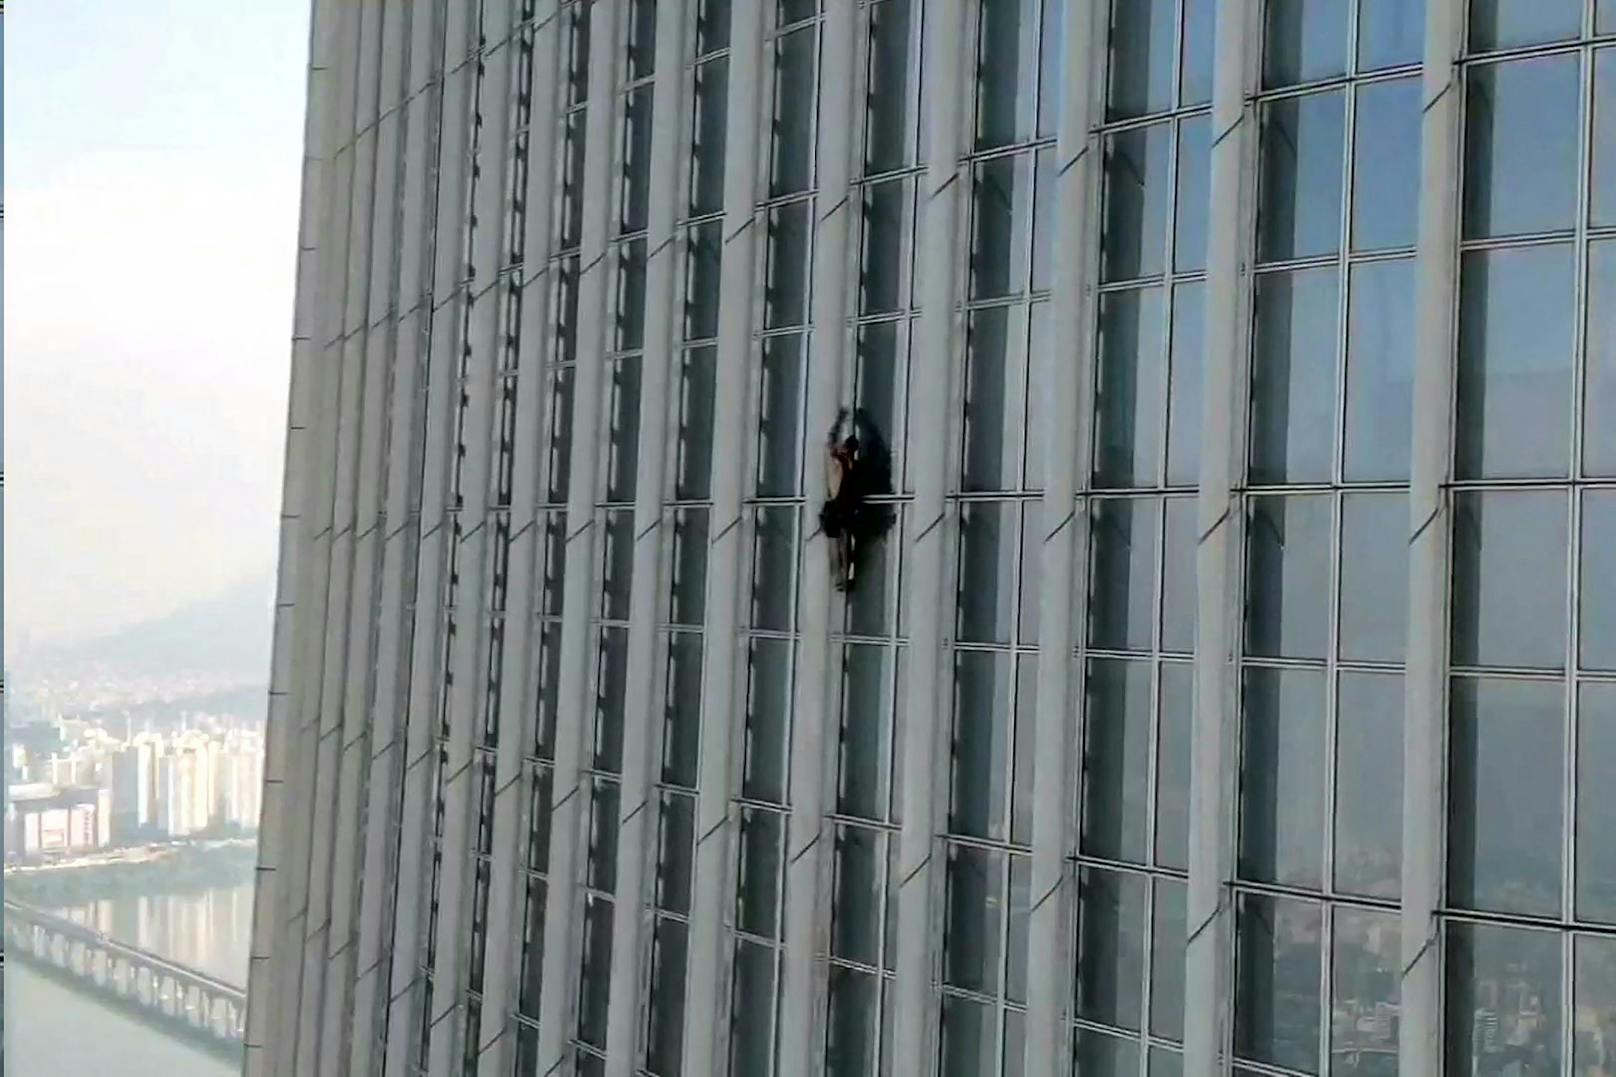 Brite klettert Hochhaus hoch, wird im 73. Stock verhaftet